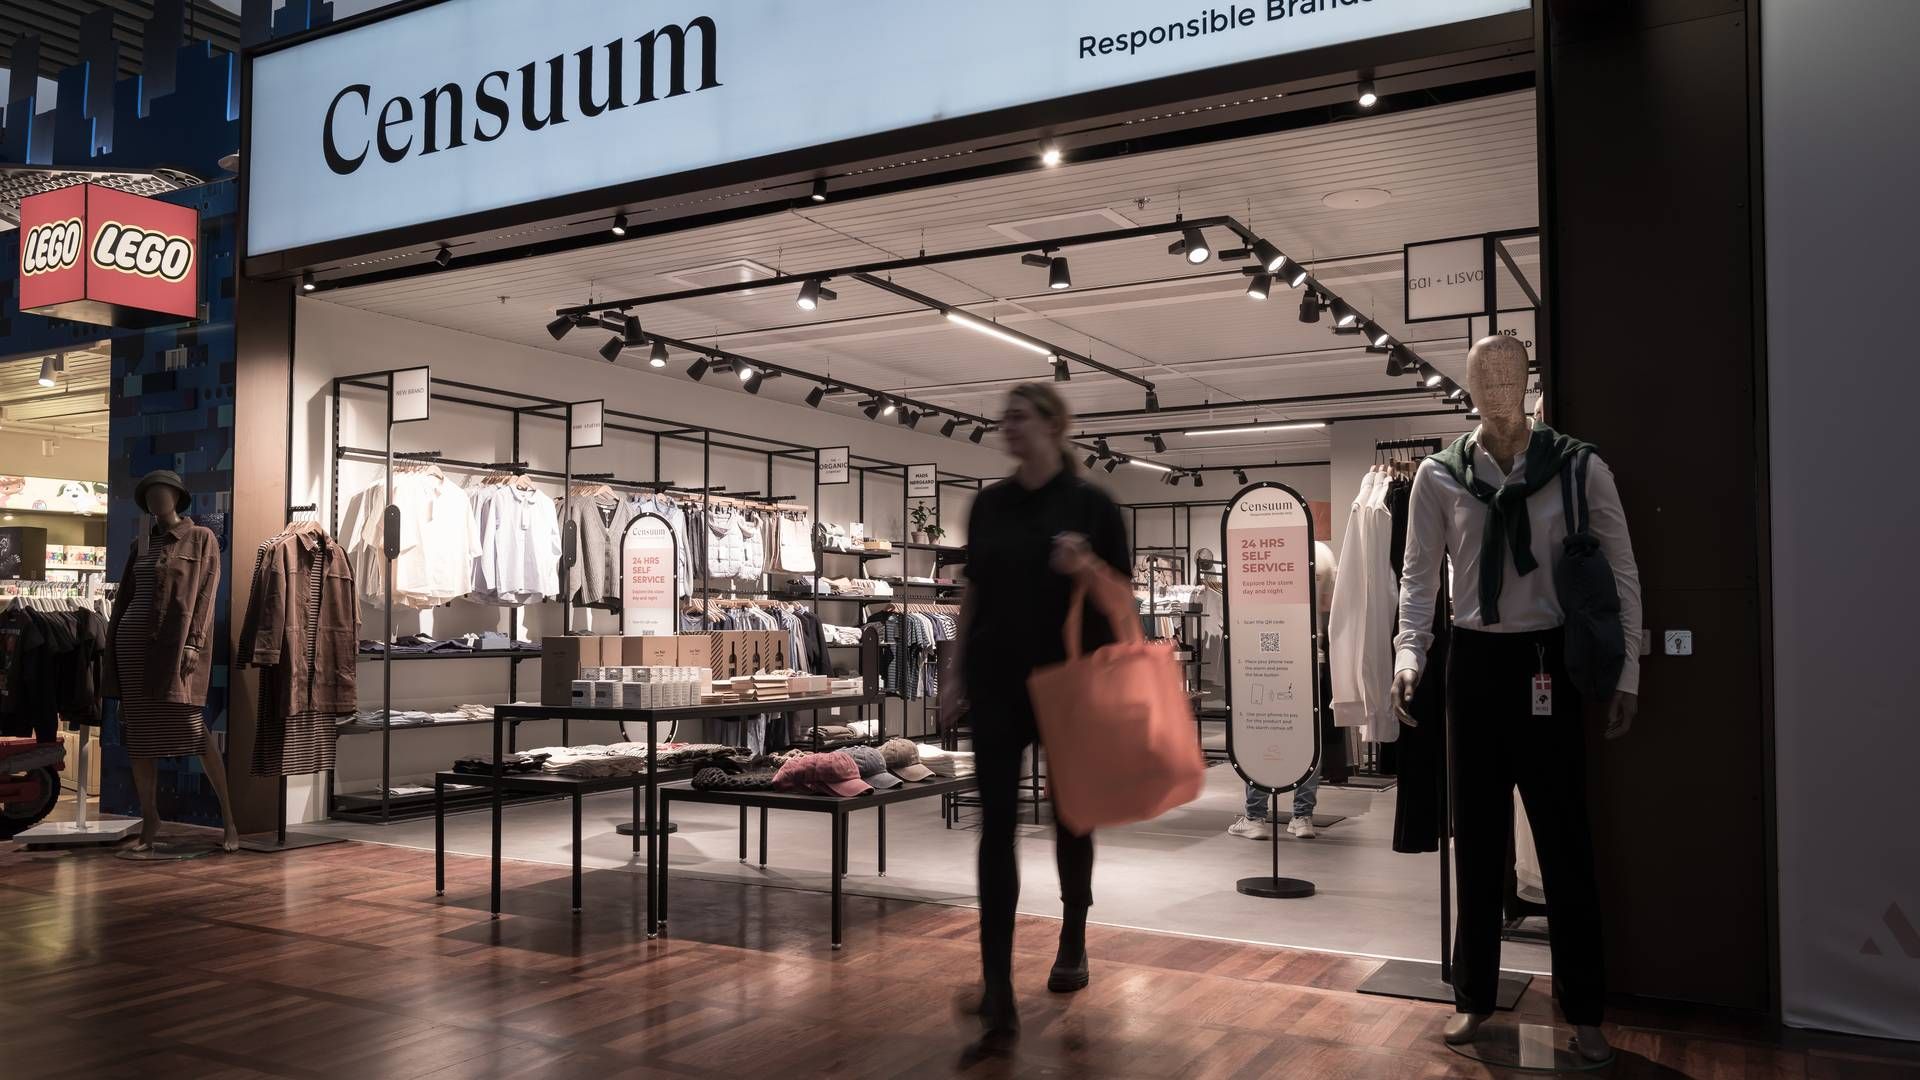 Butikskoncept for online brands åbner ubemandet butik i Københavns — DetailWatch